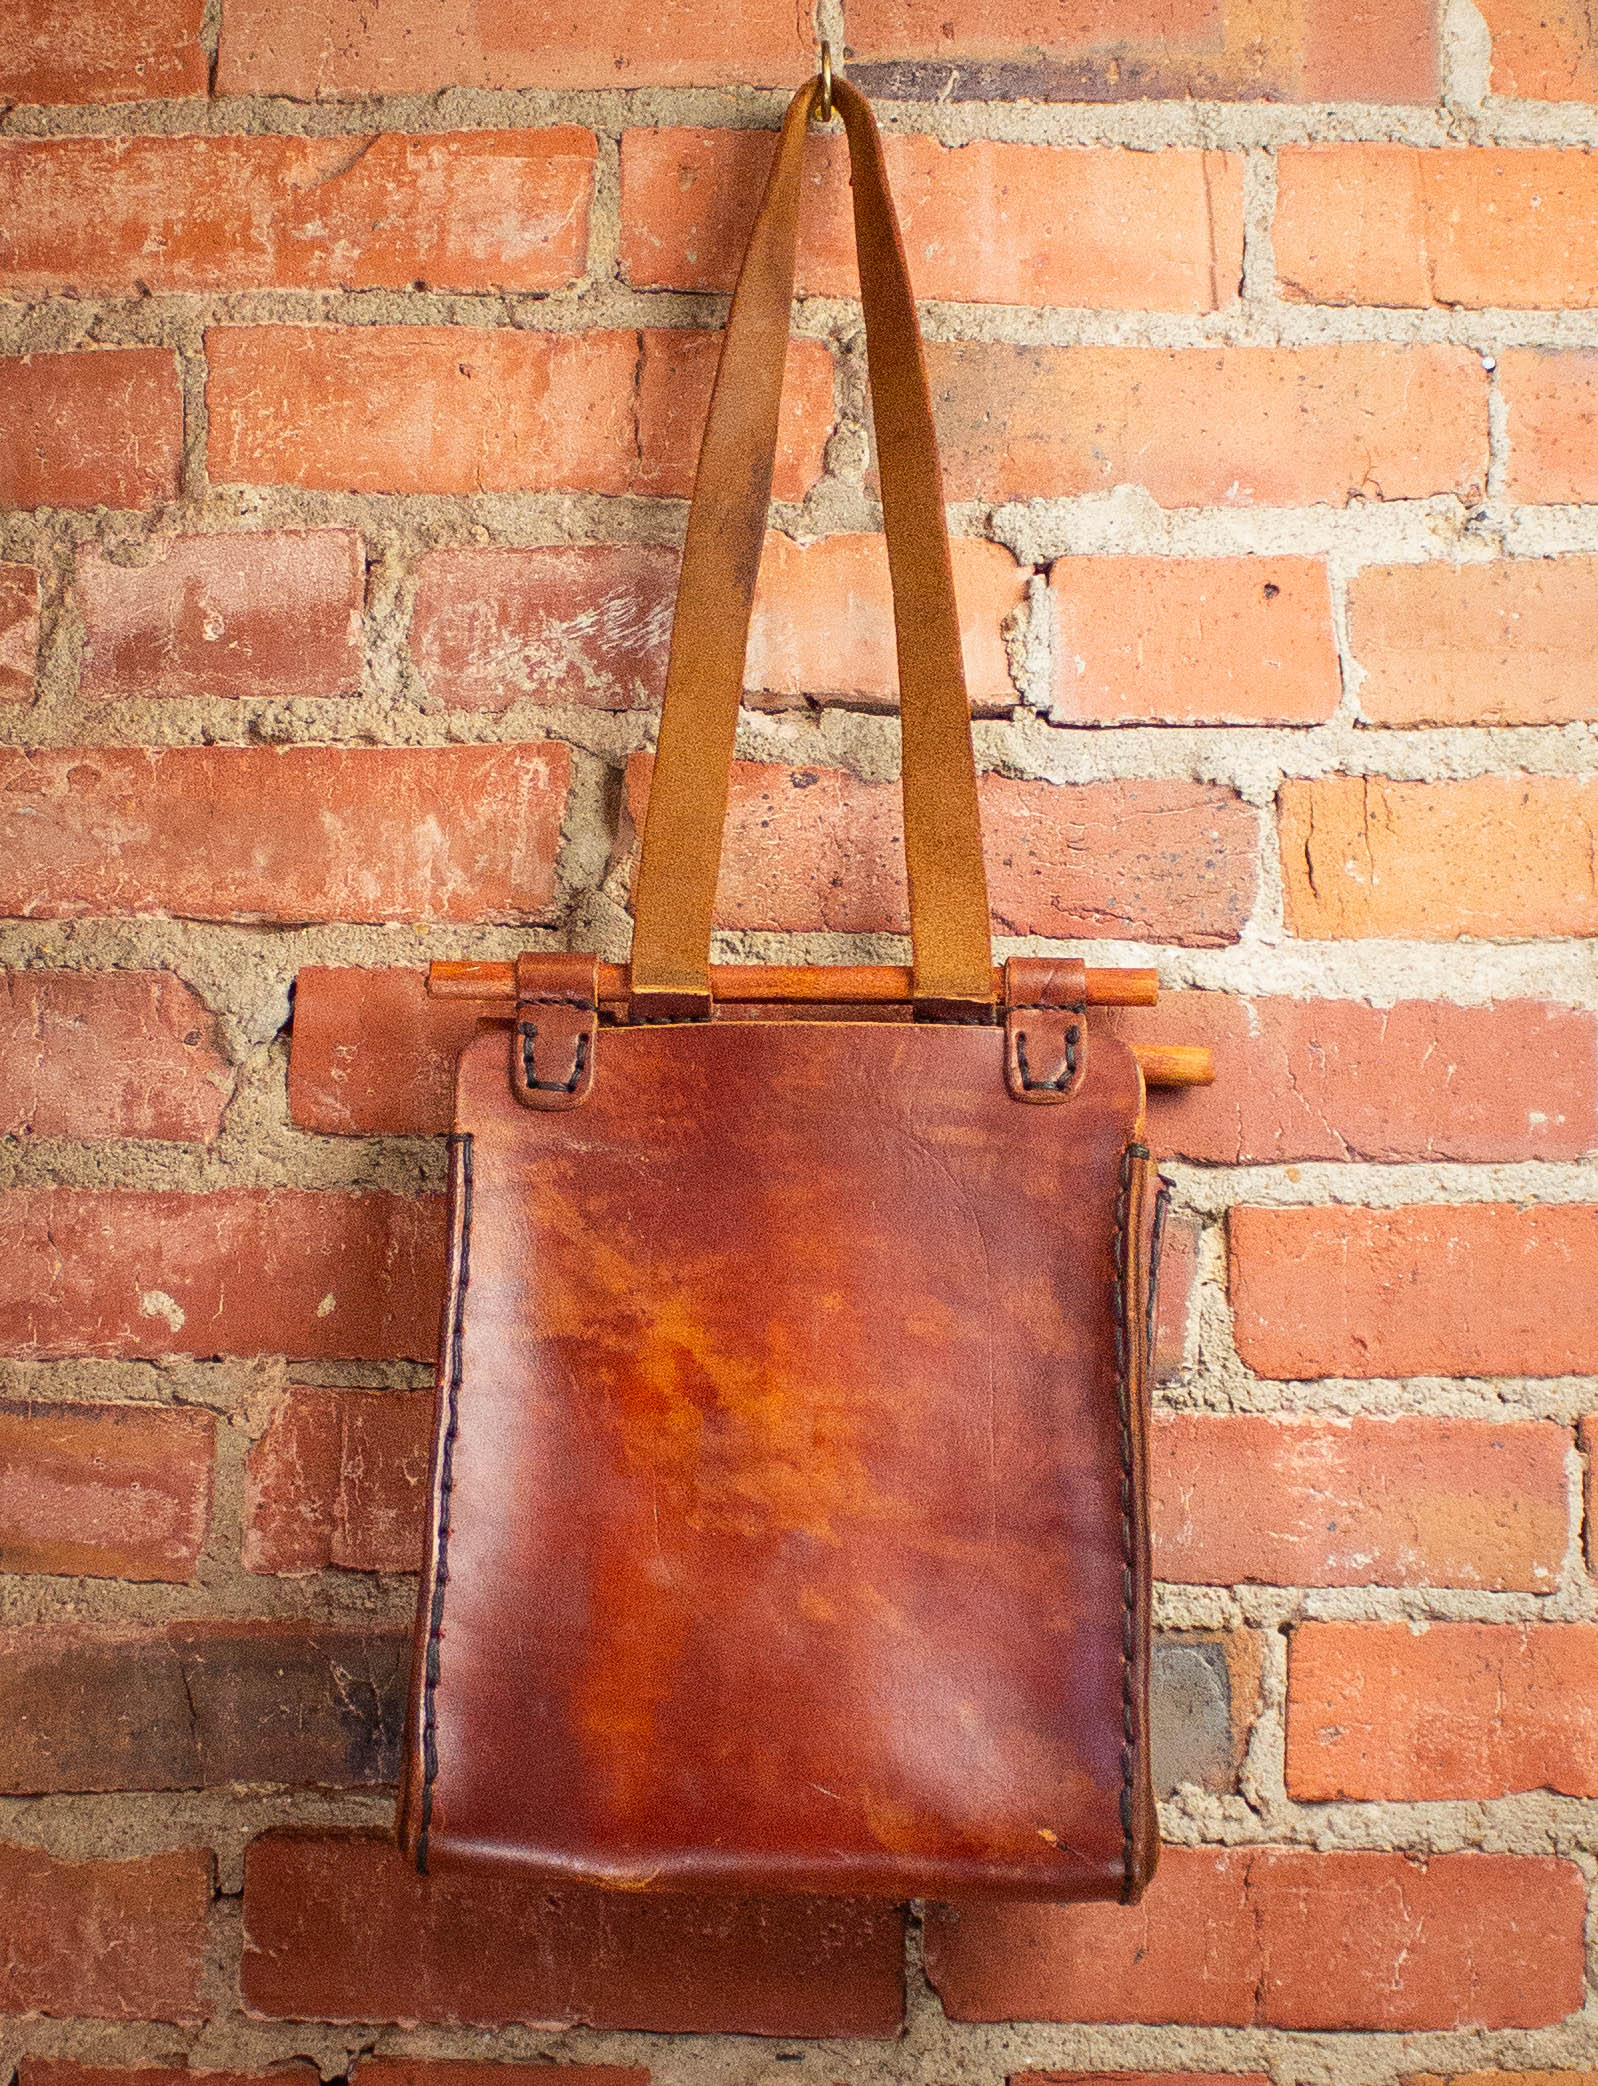 vintage brick bag